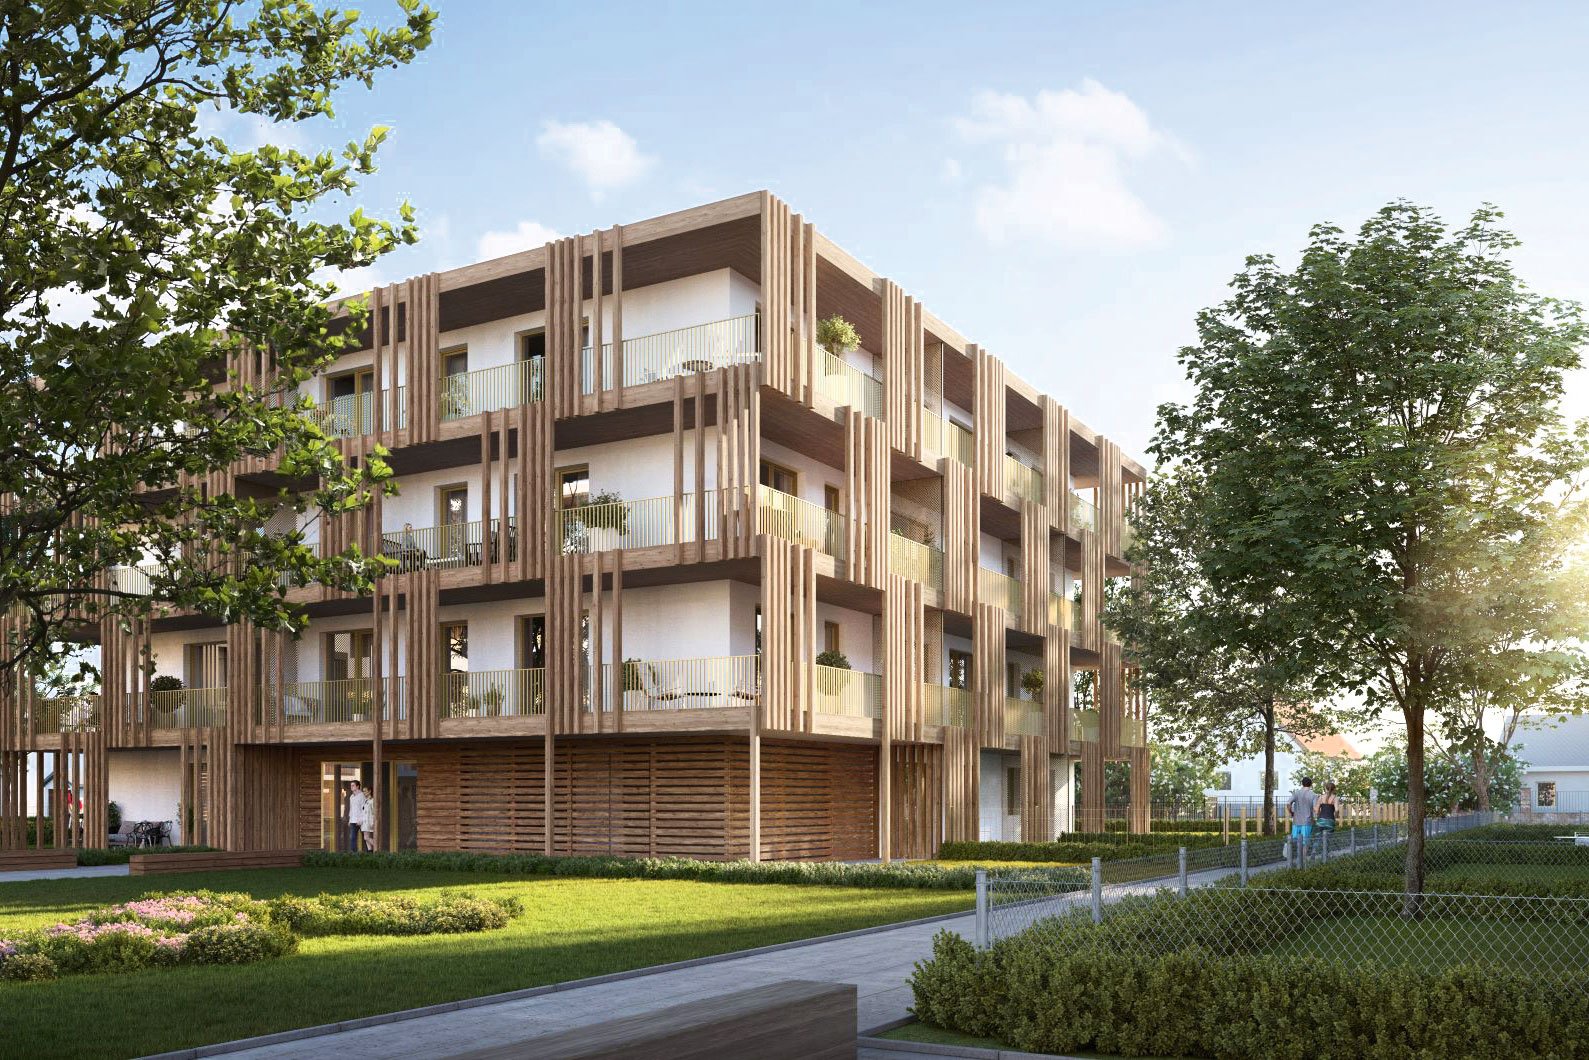 Eigennutzer und Anleger: Im Sommer fand der Spatenstich für des »POST QUADRAT« in Graz statt. Die insgesamt 40 Wohneinheiten verfügen über 2- und 3-Zimmer-Wohnungen mit 42 bis 61 m² Wohnfläche. Alle Wohneinheiten bieten helle Räume mit großen Fenster-flächen und – für die Wohnungssuchenden ganz wichtig geworden – Freiflächen wie Balkone oder Terrassen. Beim Projekt wird gezielt auf den nachhaltigen, regional nachwachsenden Baustoff Holz gesetzt. post-quadrat.at